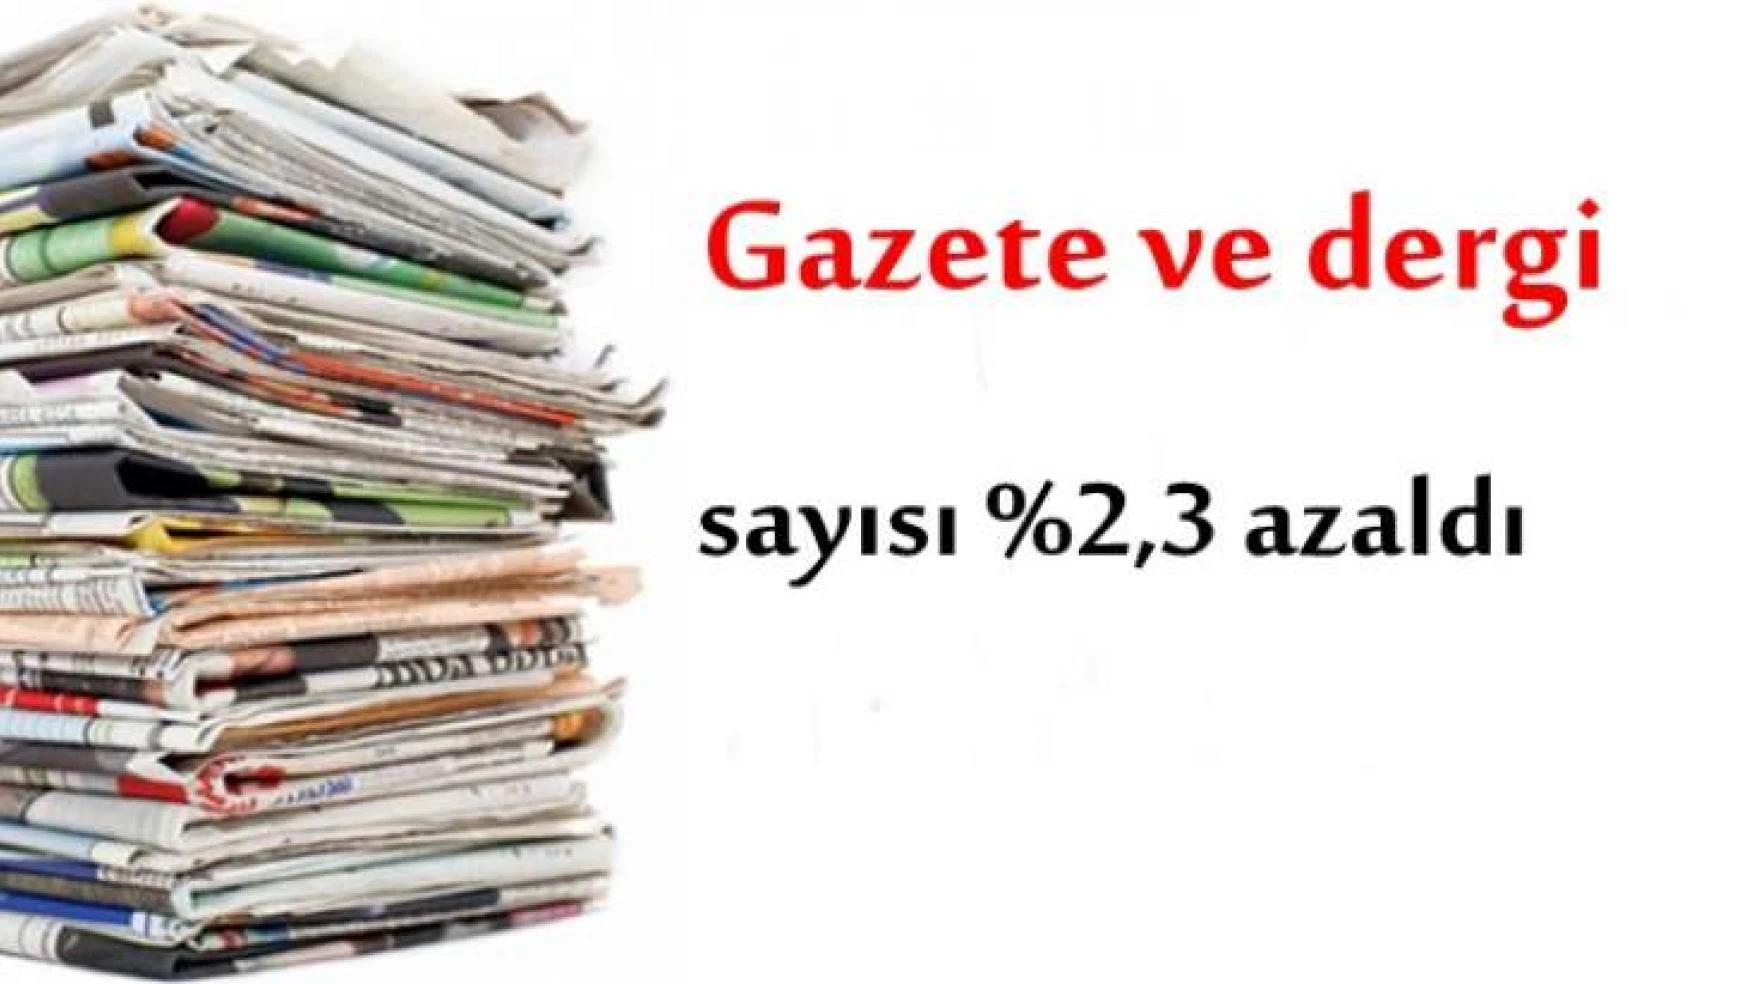 Gazete ve dergi sayısı %2,3 azaldı